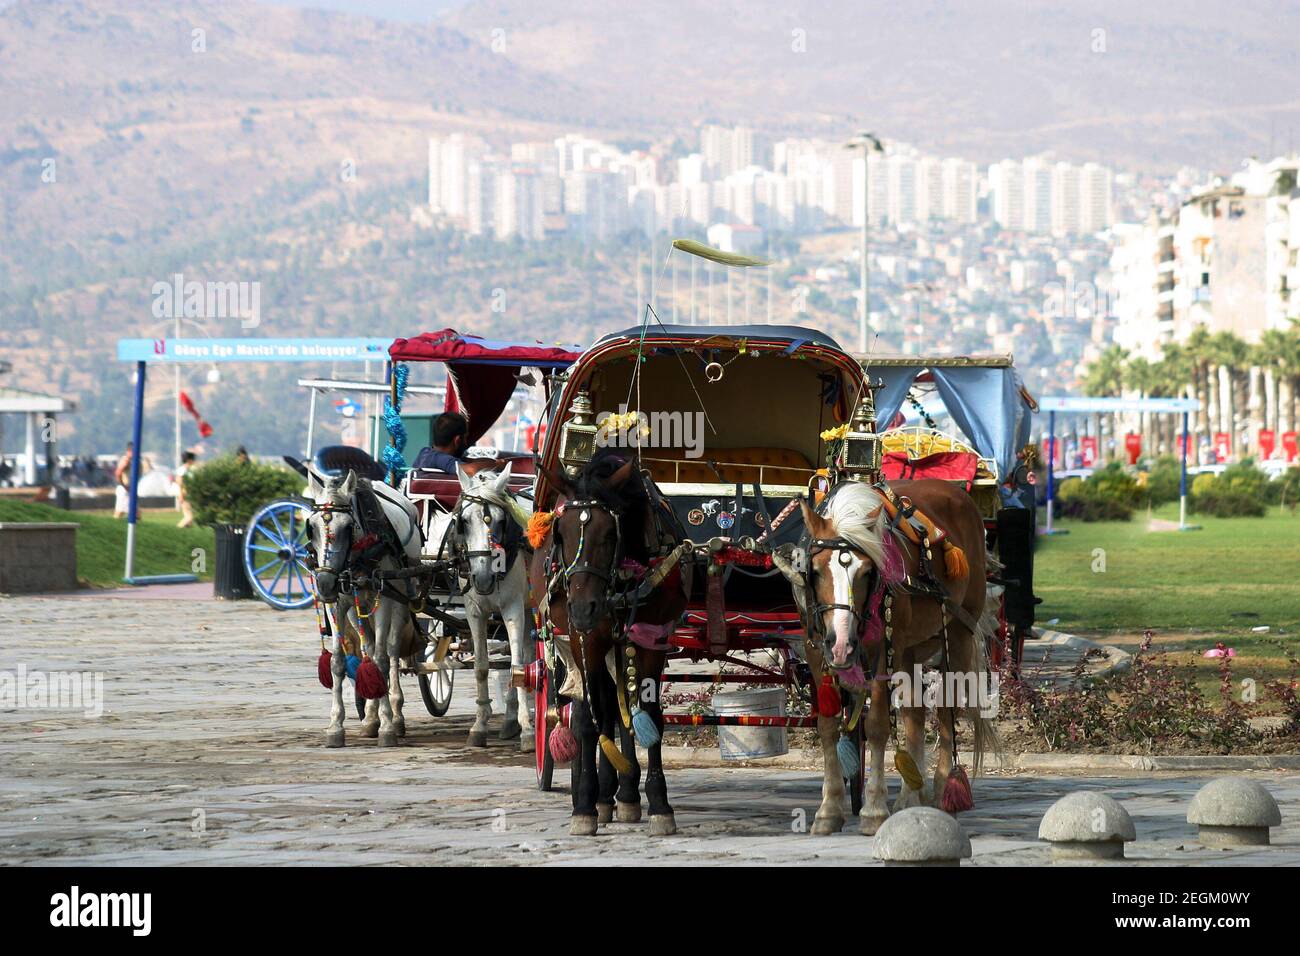 Phaetons attendant le passager à la ville d'Izmir en Turquie. Izmir est la troisième ville la plus peuplée de Turquie. Banque D'Images